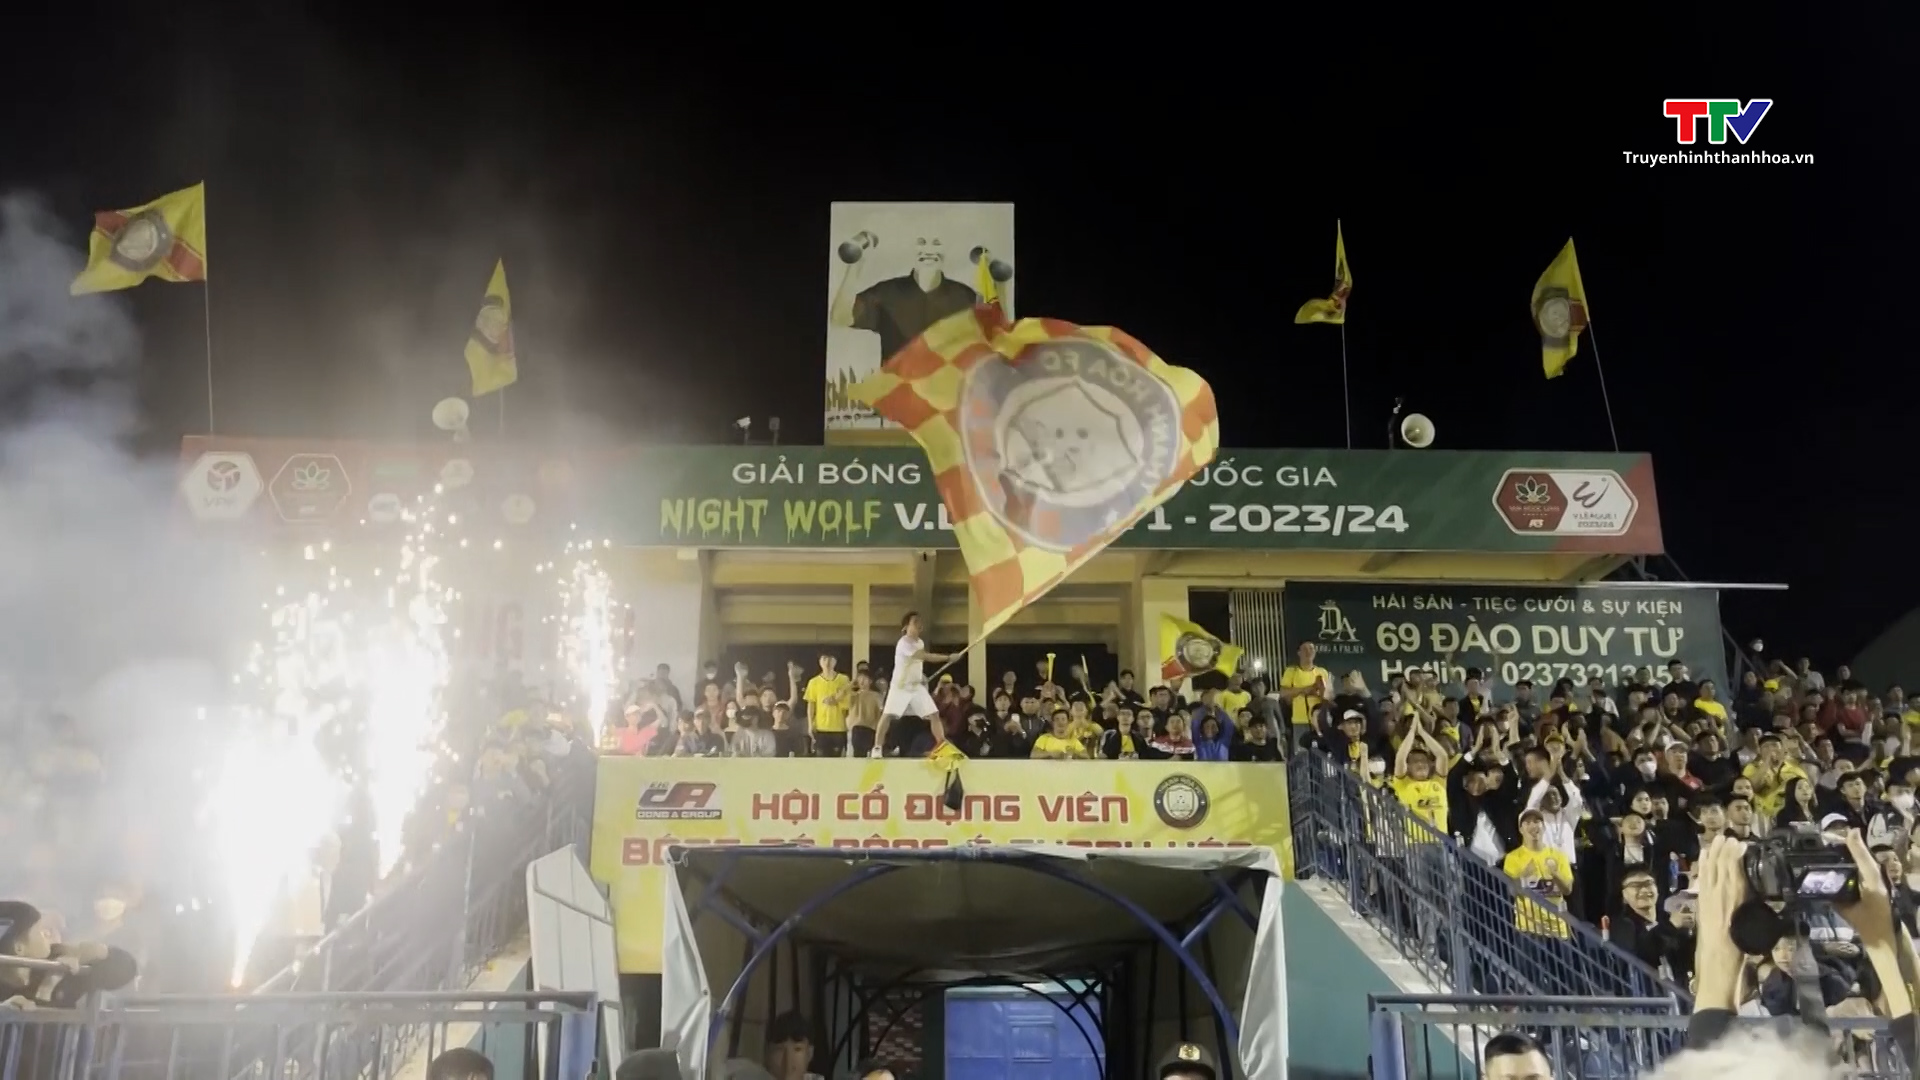 Hàng nghìn khán giả đến sân trong ngày Câu lạc bộ Đông Á Thanh Hóa chiến thắng Hà Nội tại vòng 9 V.League- Ảnh 3.